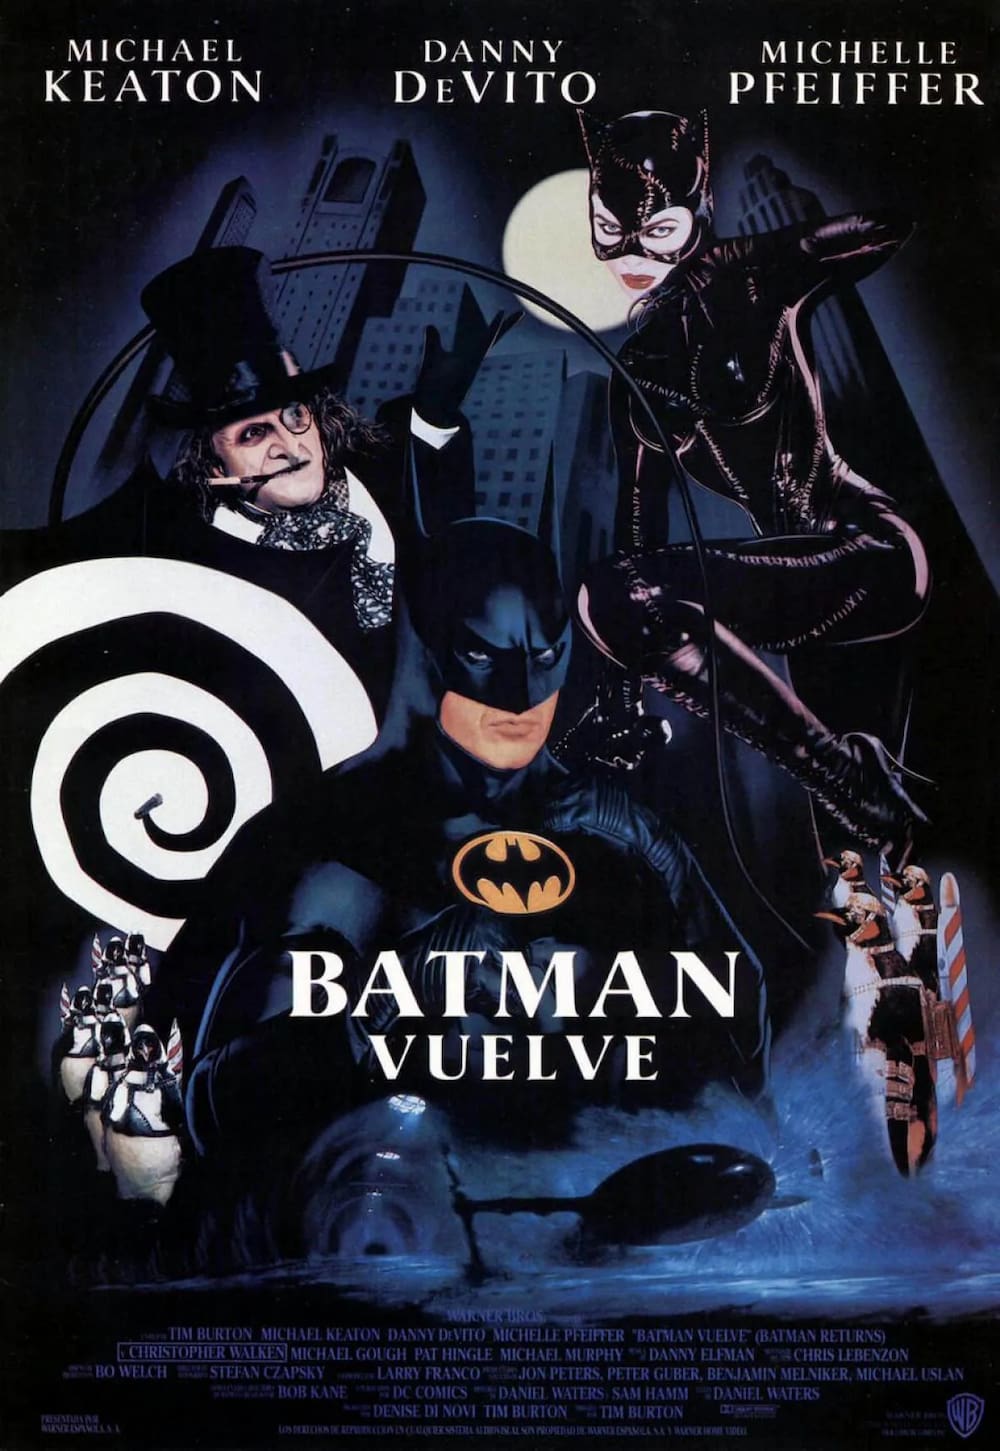 Batman Vuelve Cumple 30 Años. 5 Curiosidades de la Película